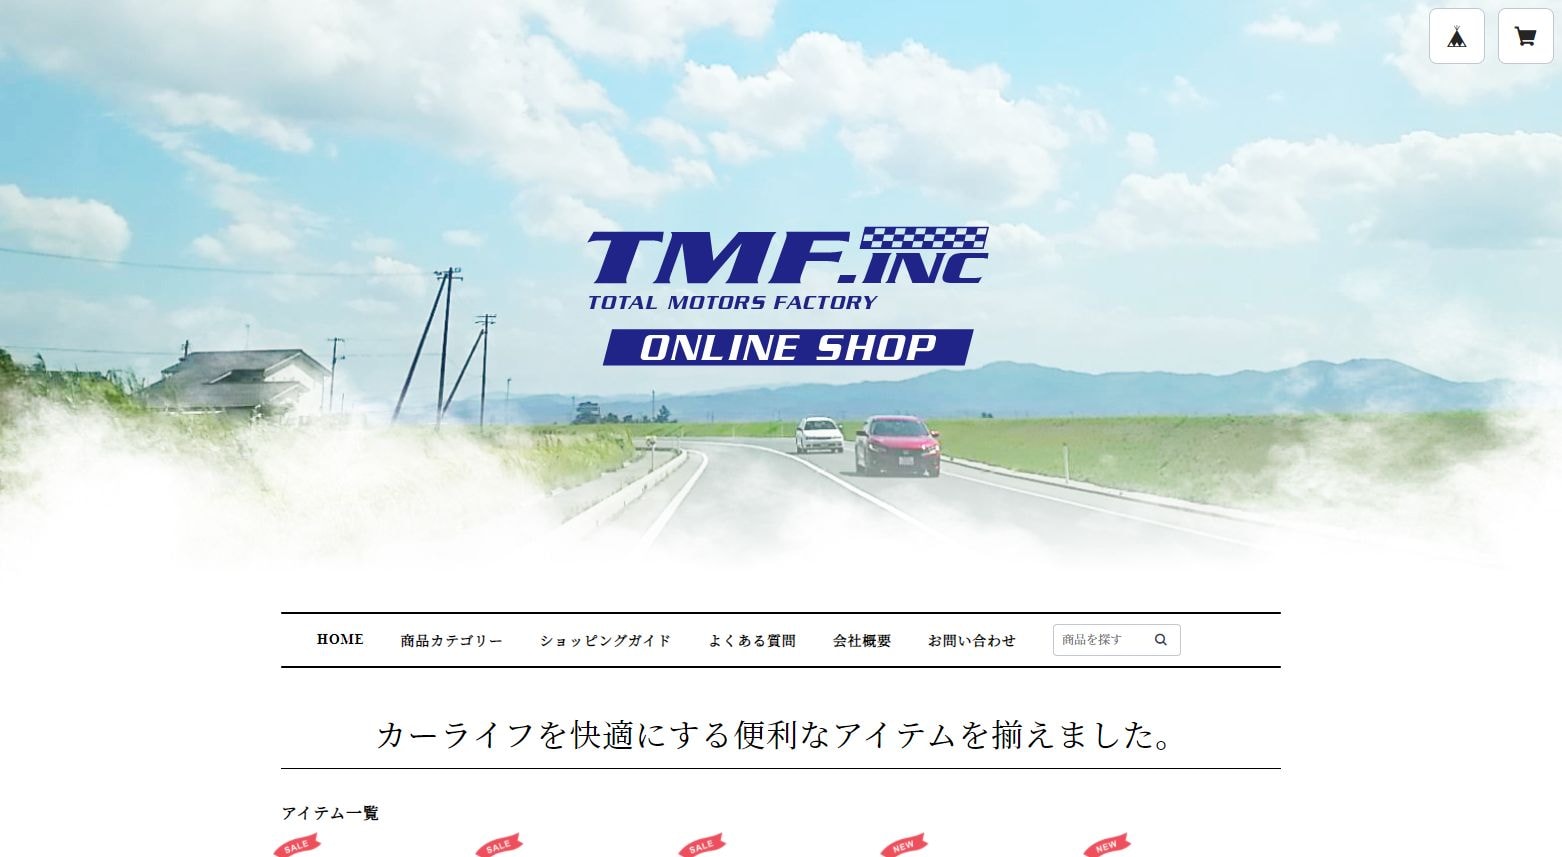 「中古車販売買取 TMF株式会社」様サイトのページ画像2